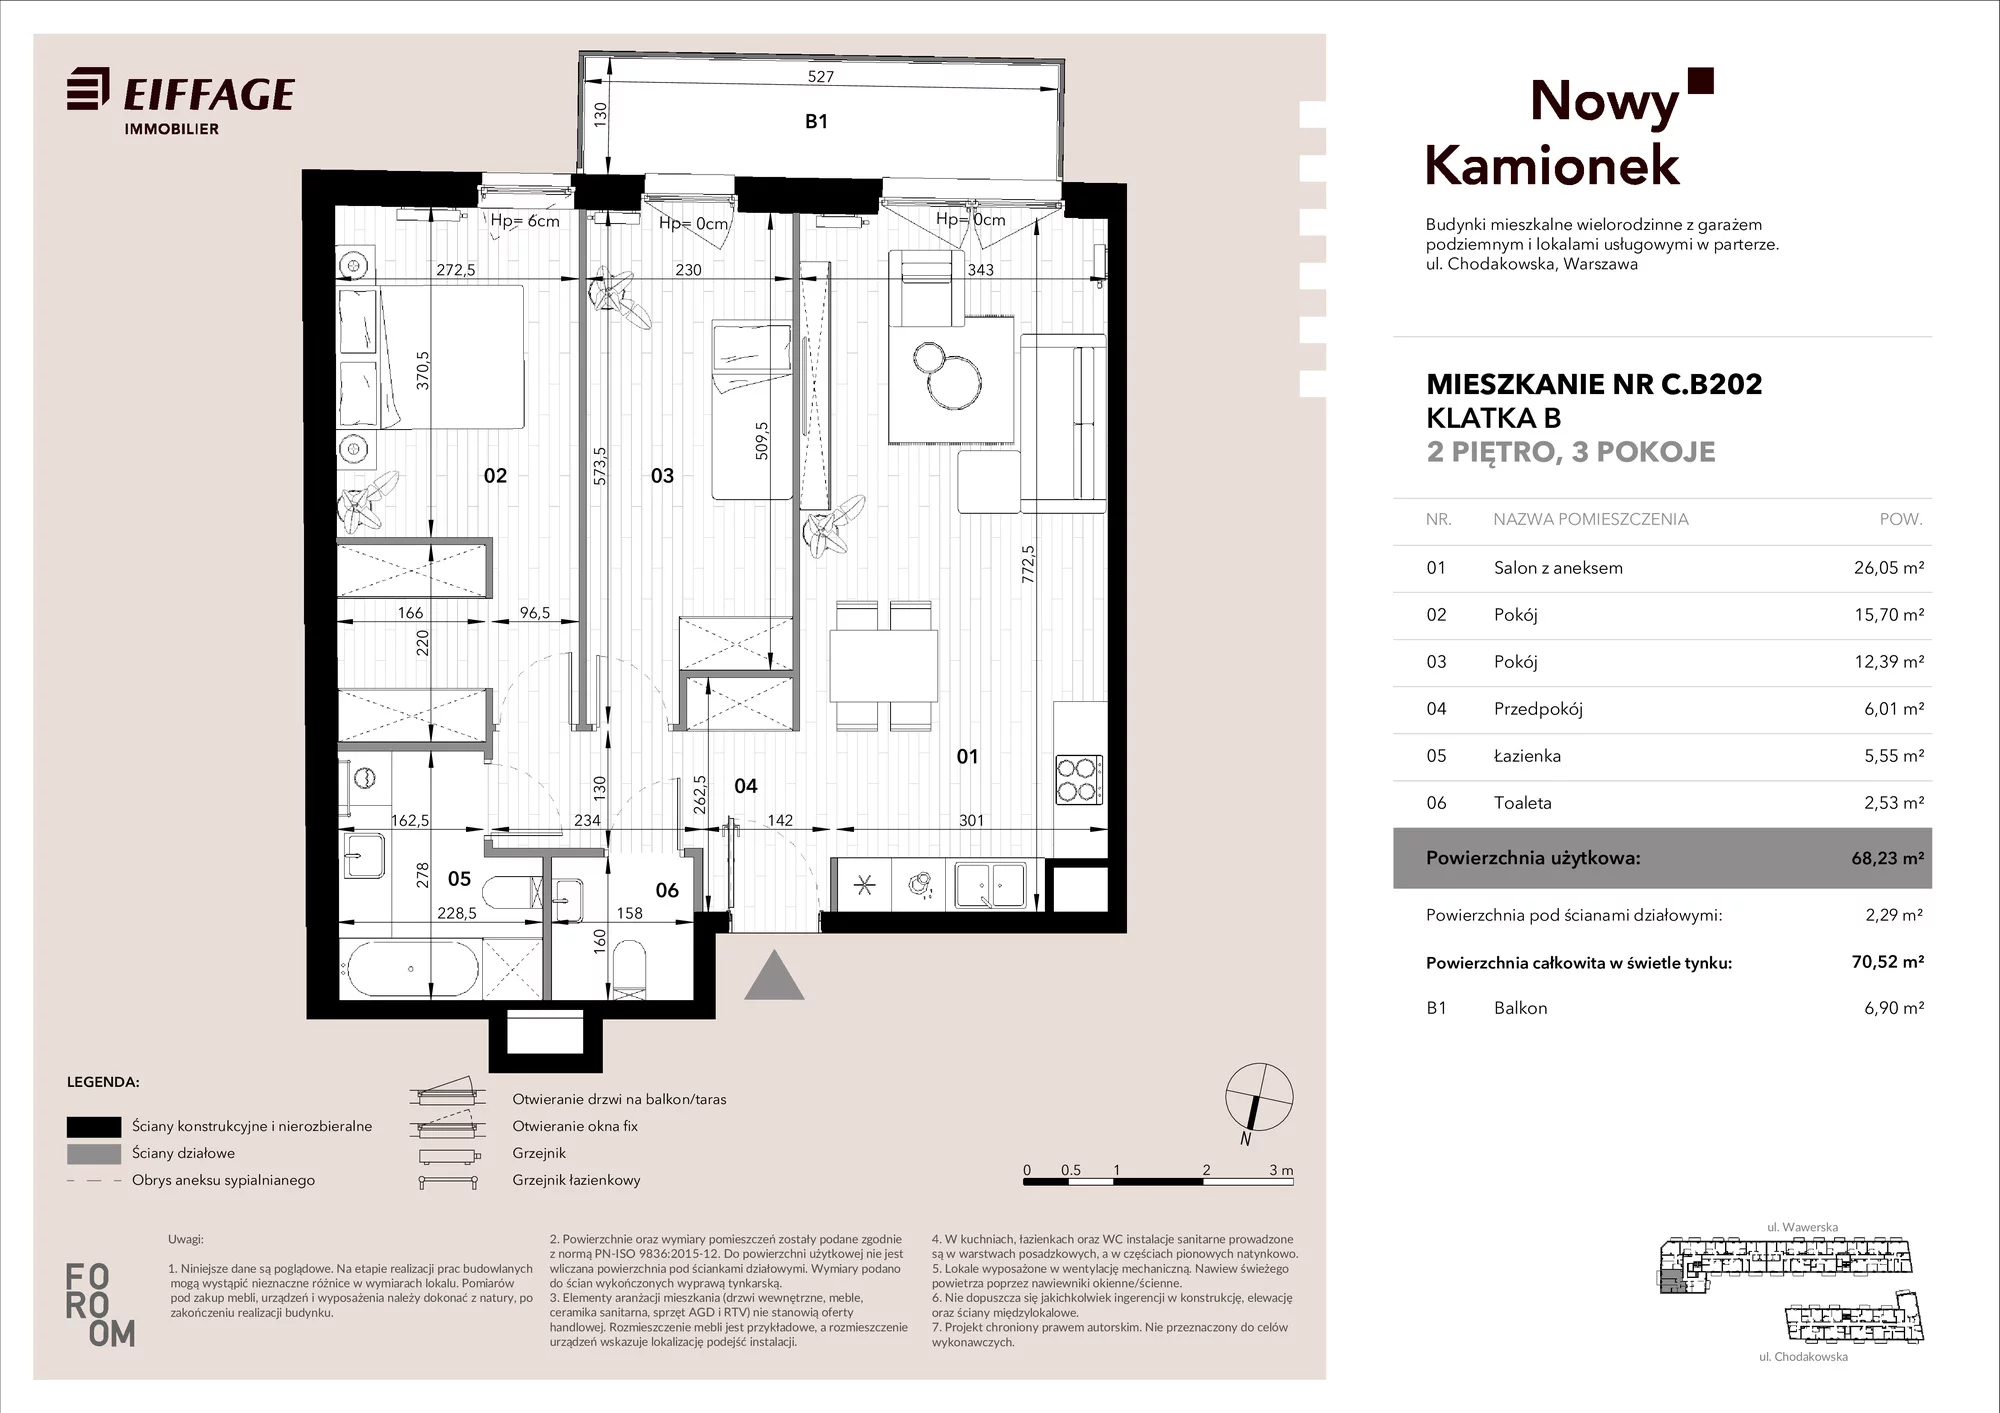 Mieszkanie 68,23 m², piętro 2, oferta nr C.B202, Nowy Kamionek, Warszawa, Praga Południe, Kamionek, ul. Chodakowska